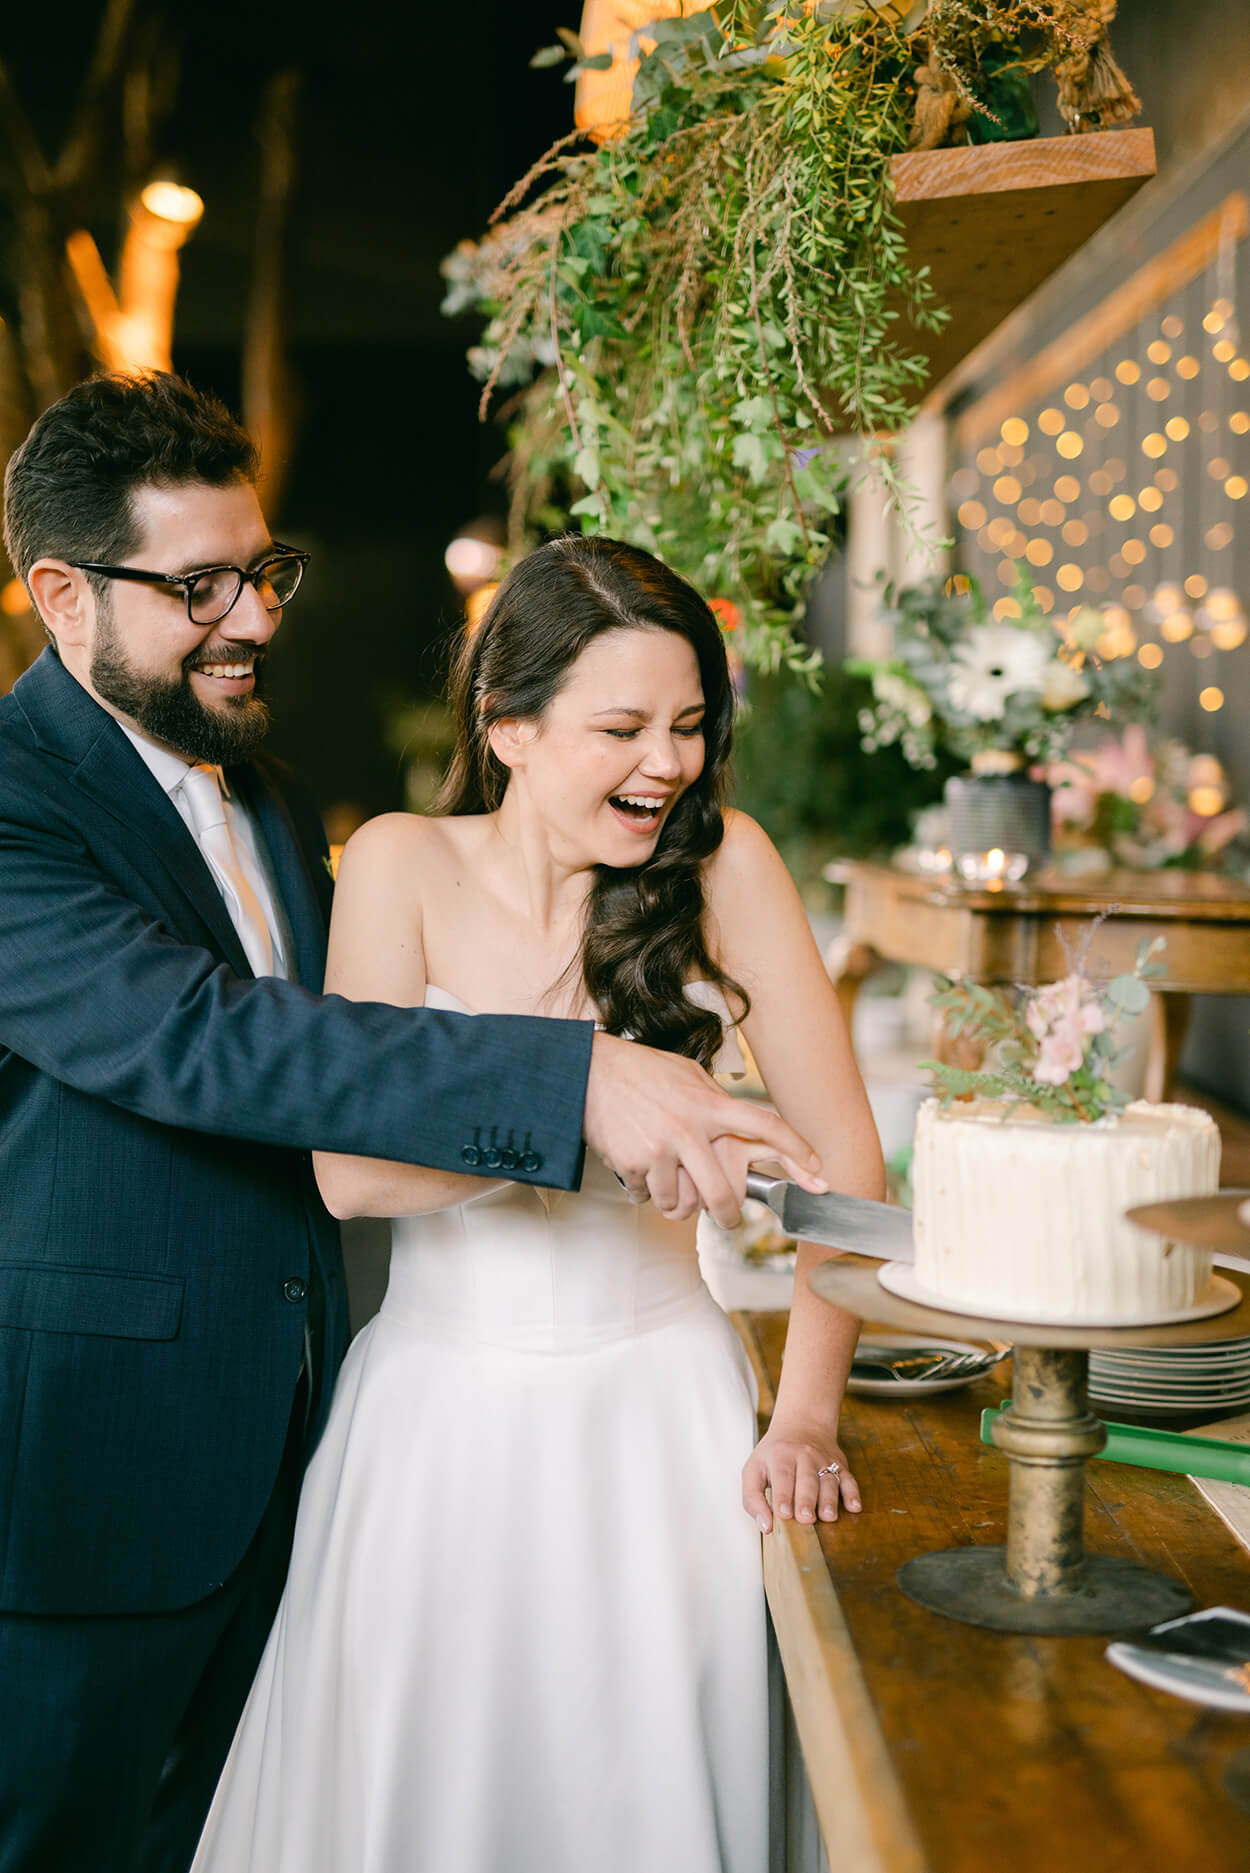 noivos sorrindo enquanto cortam o bolo de casamento